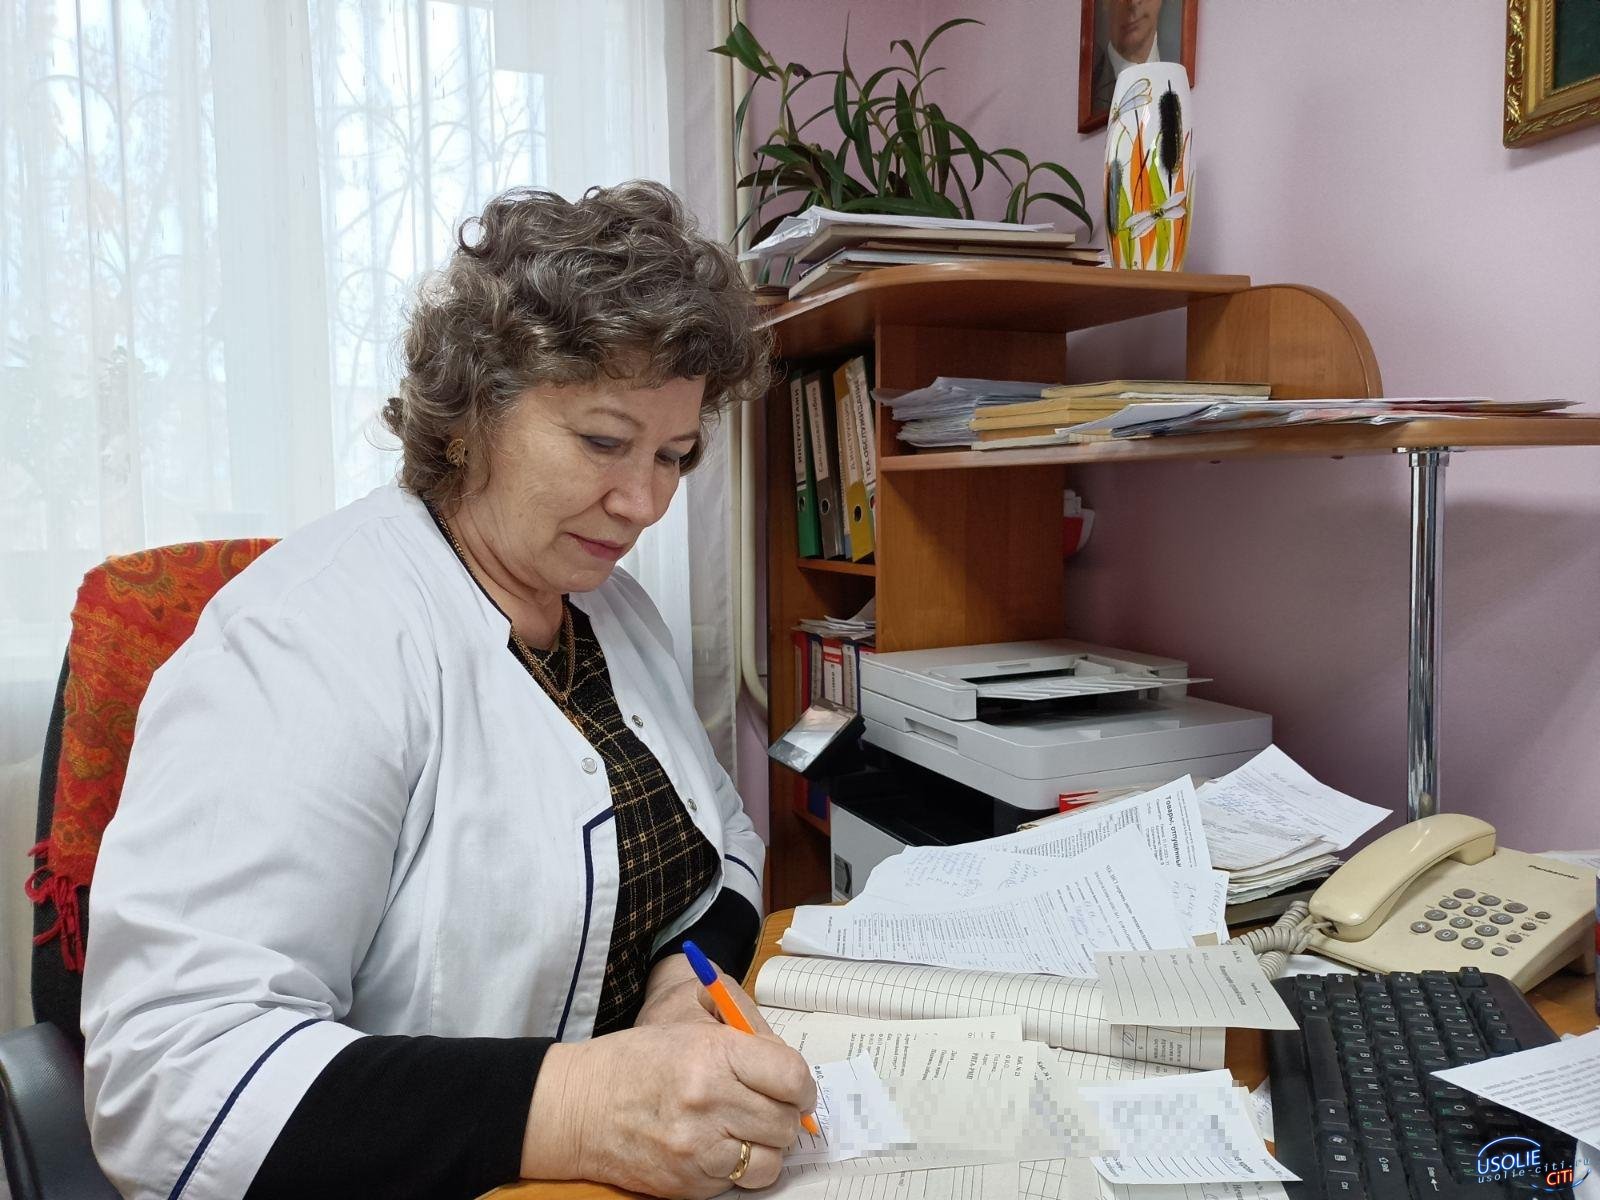 44 года в медицине. Усольчанка Ирина Лобода - ветеран здравоохранения